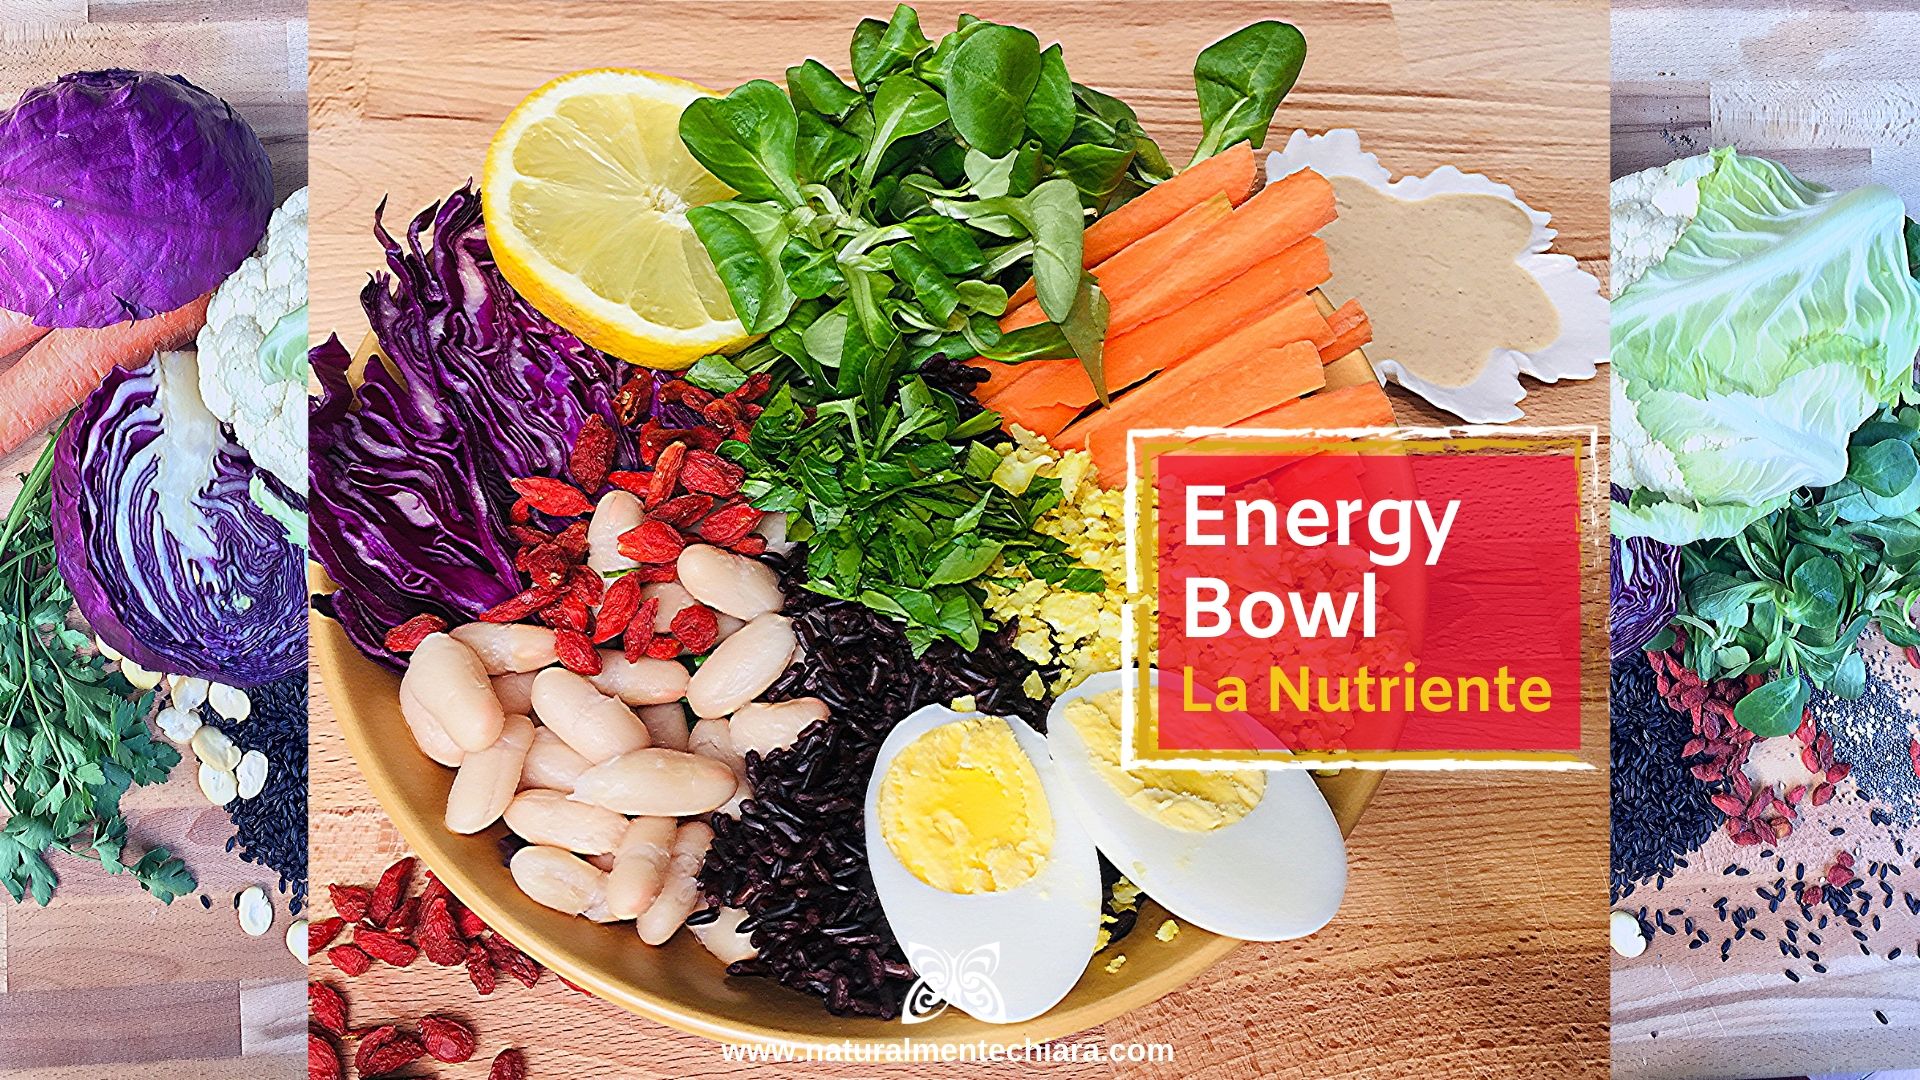 Energy Bowl – La Nutriente